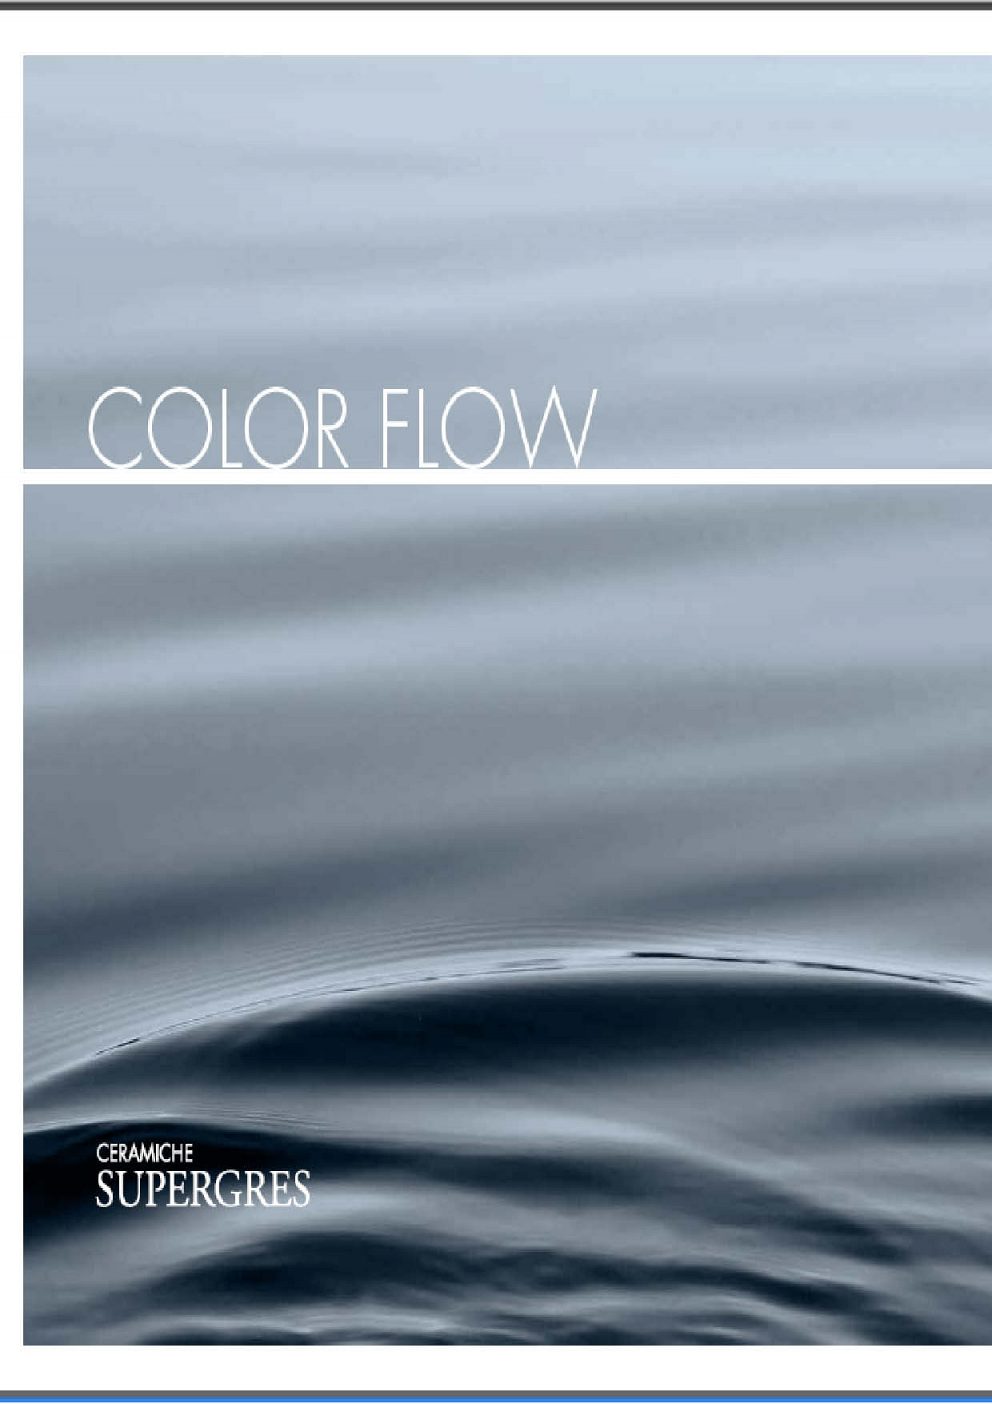 Supergres - Color flow